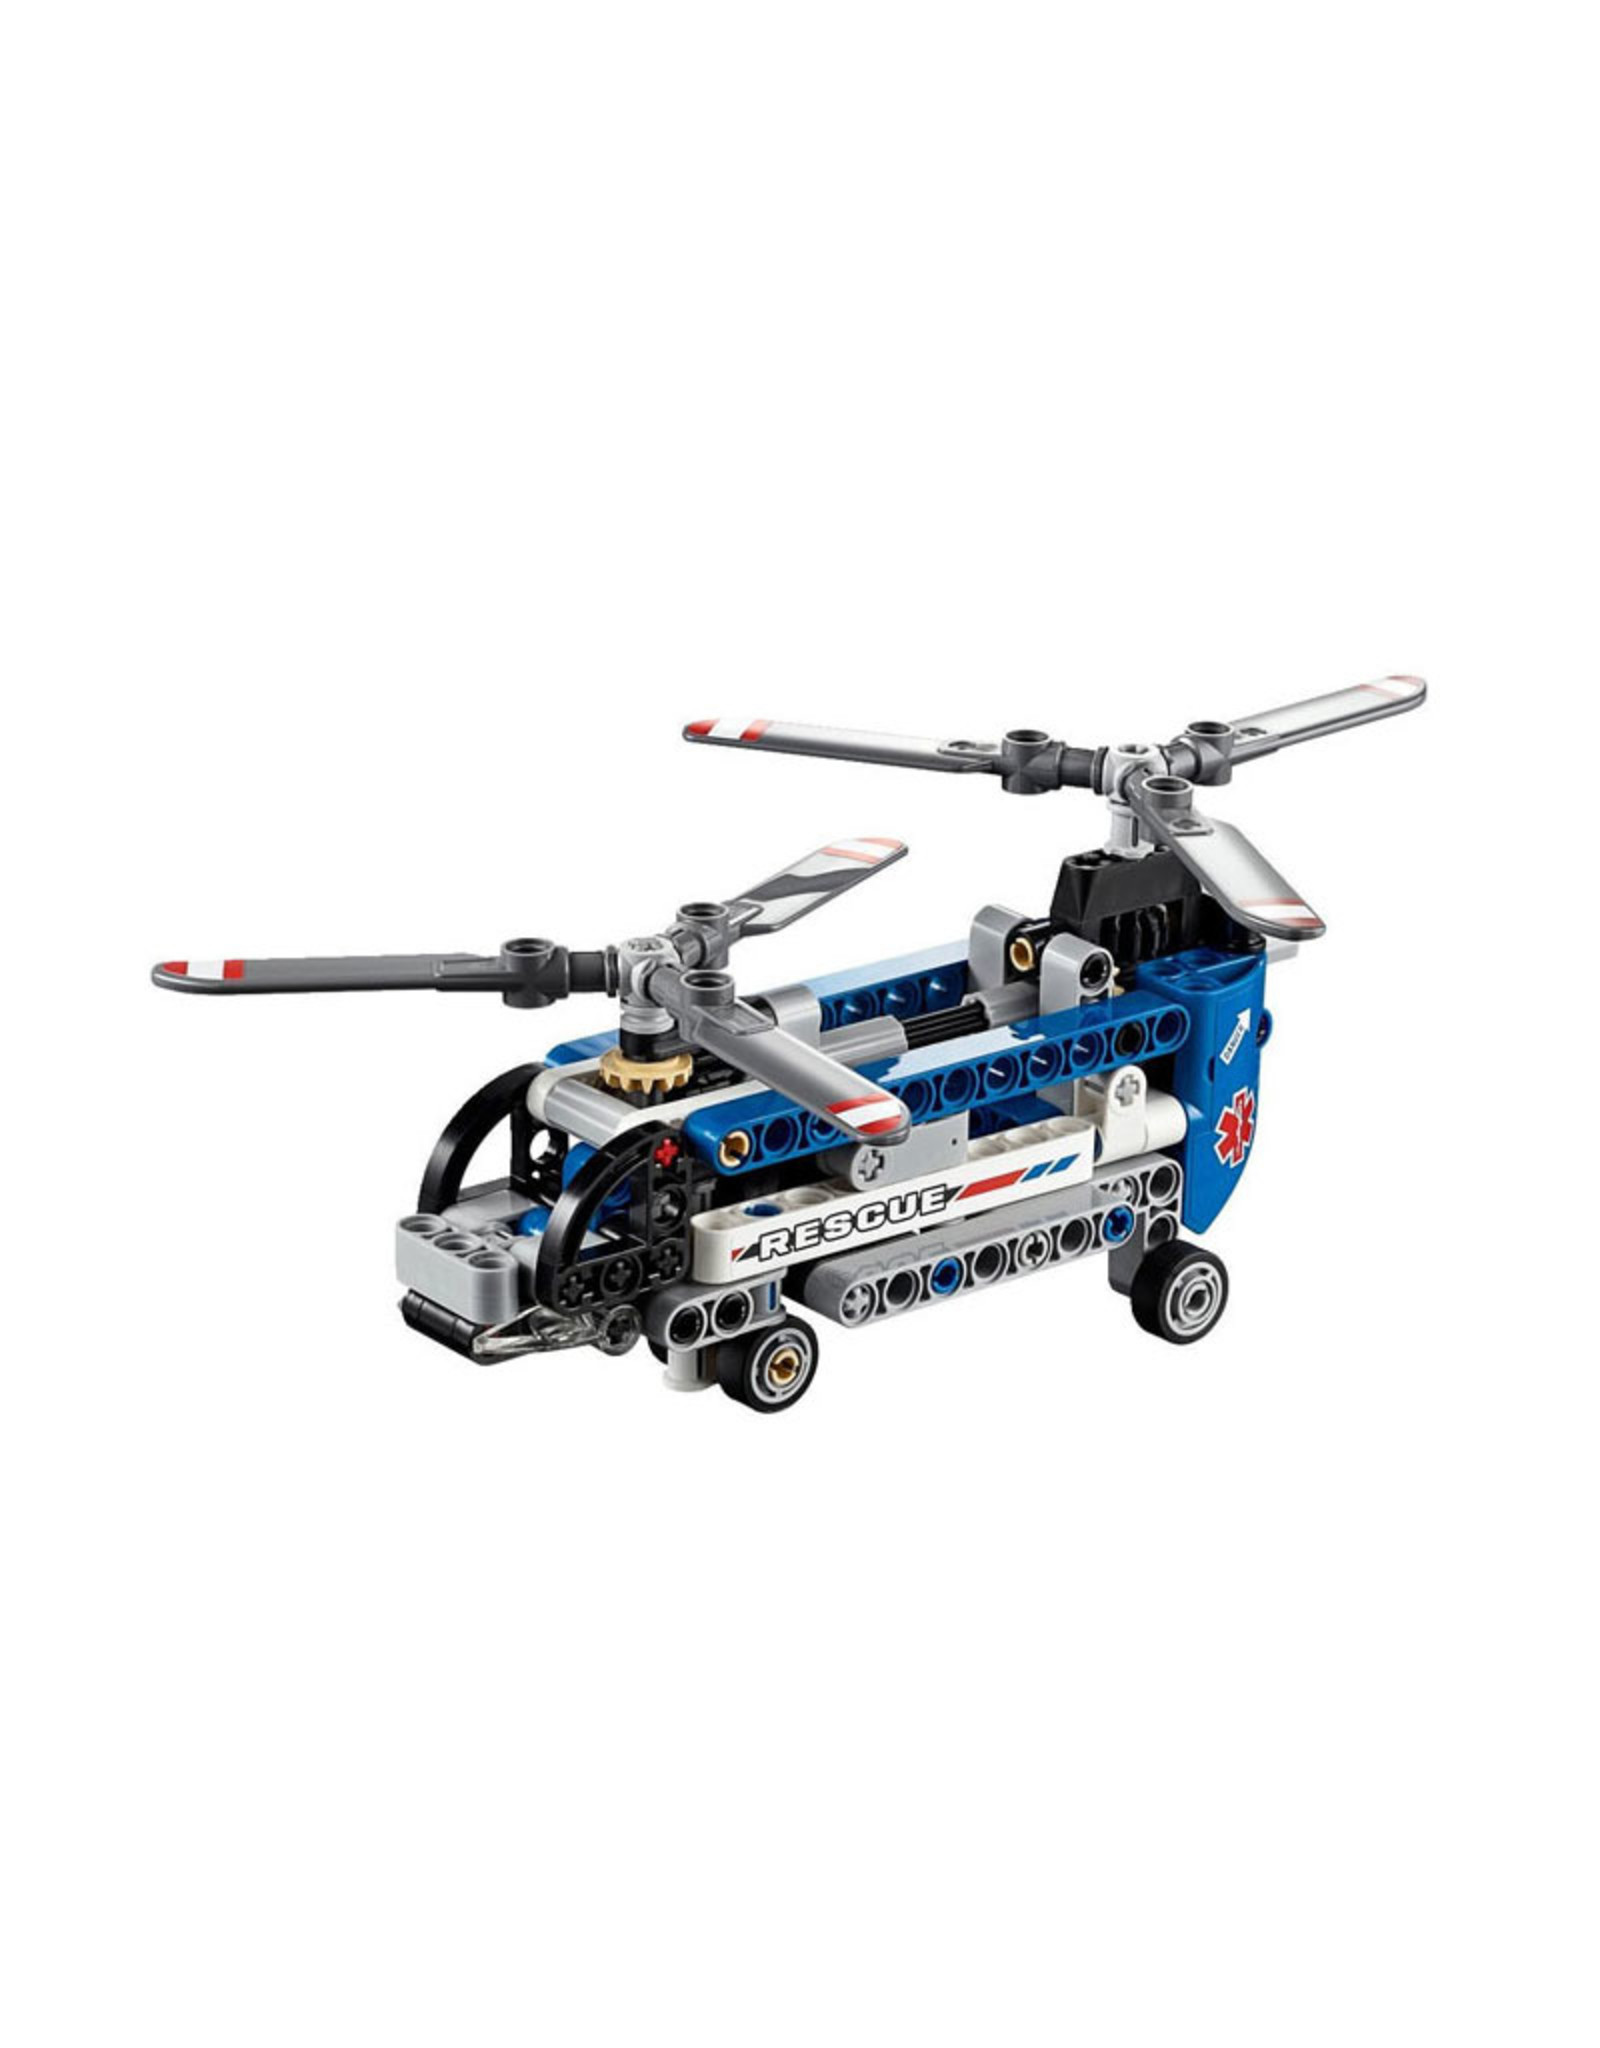 barsten Mona Lisa Verloren hart LEGO 42020 Twin-rotor Helicopter TECHNIC - Crossdock